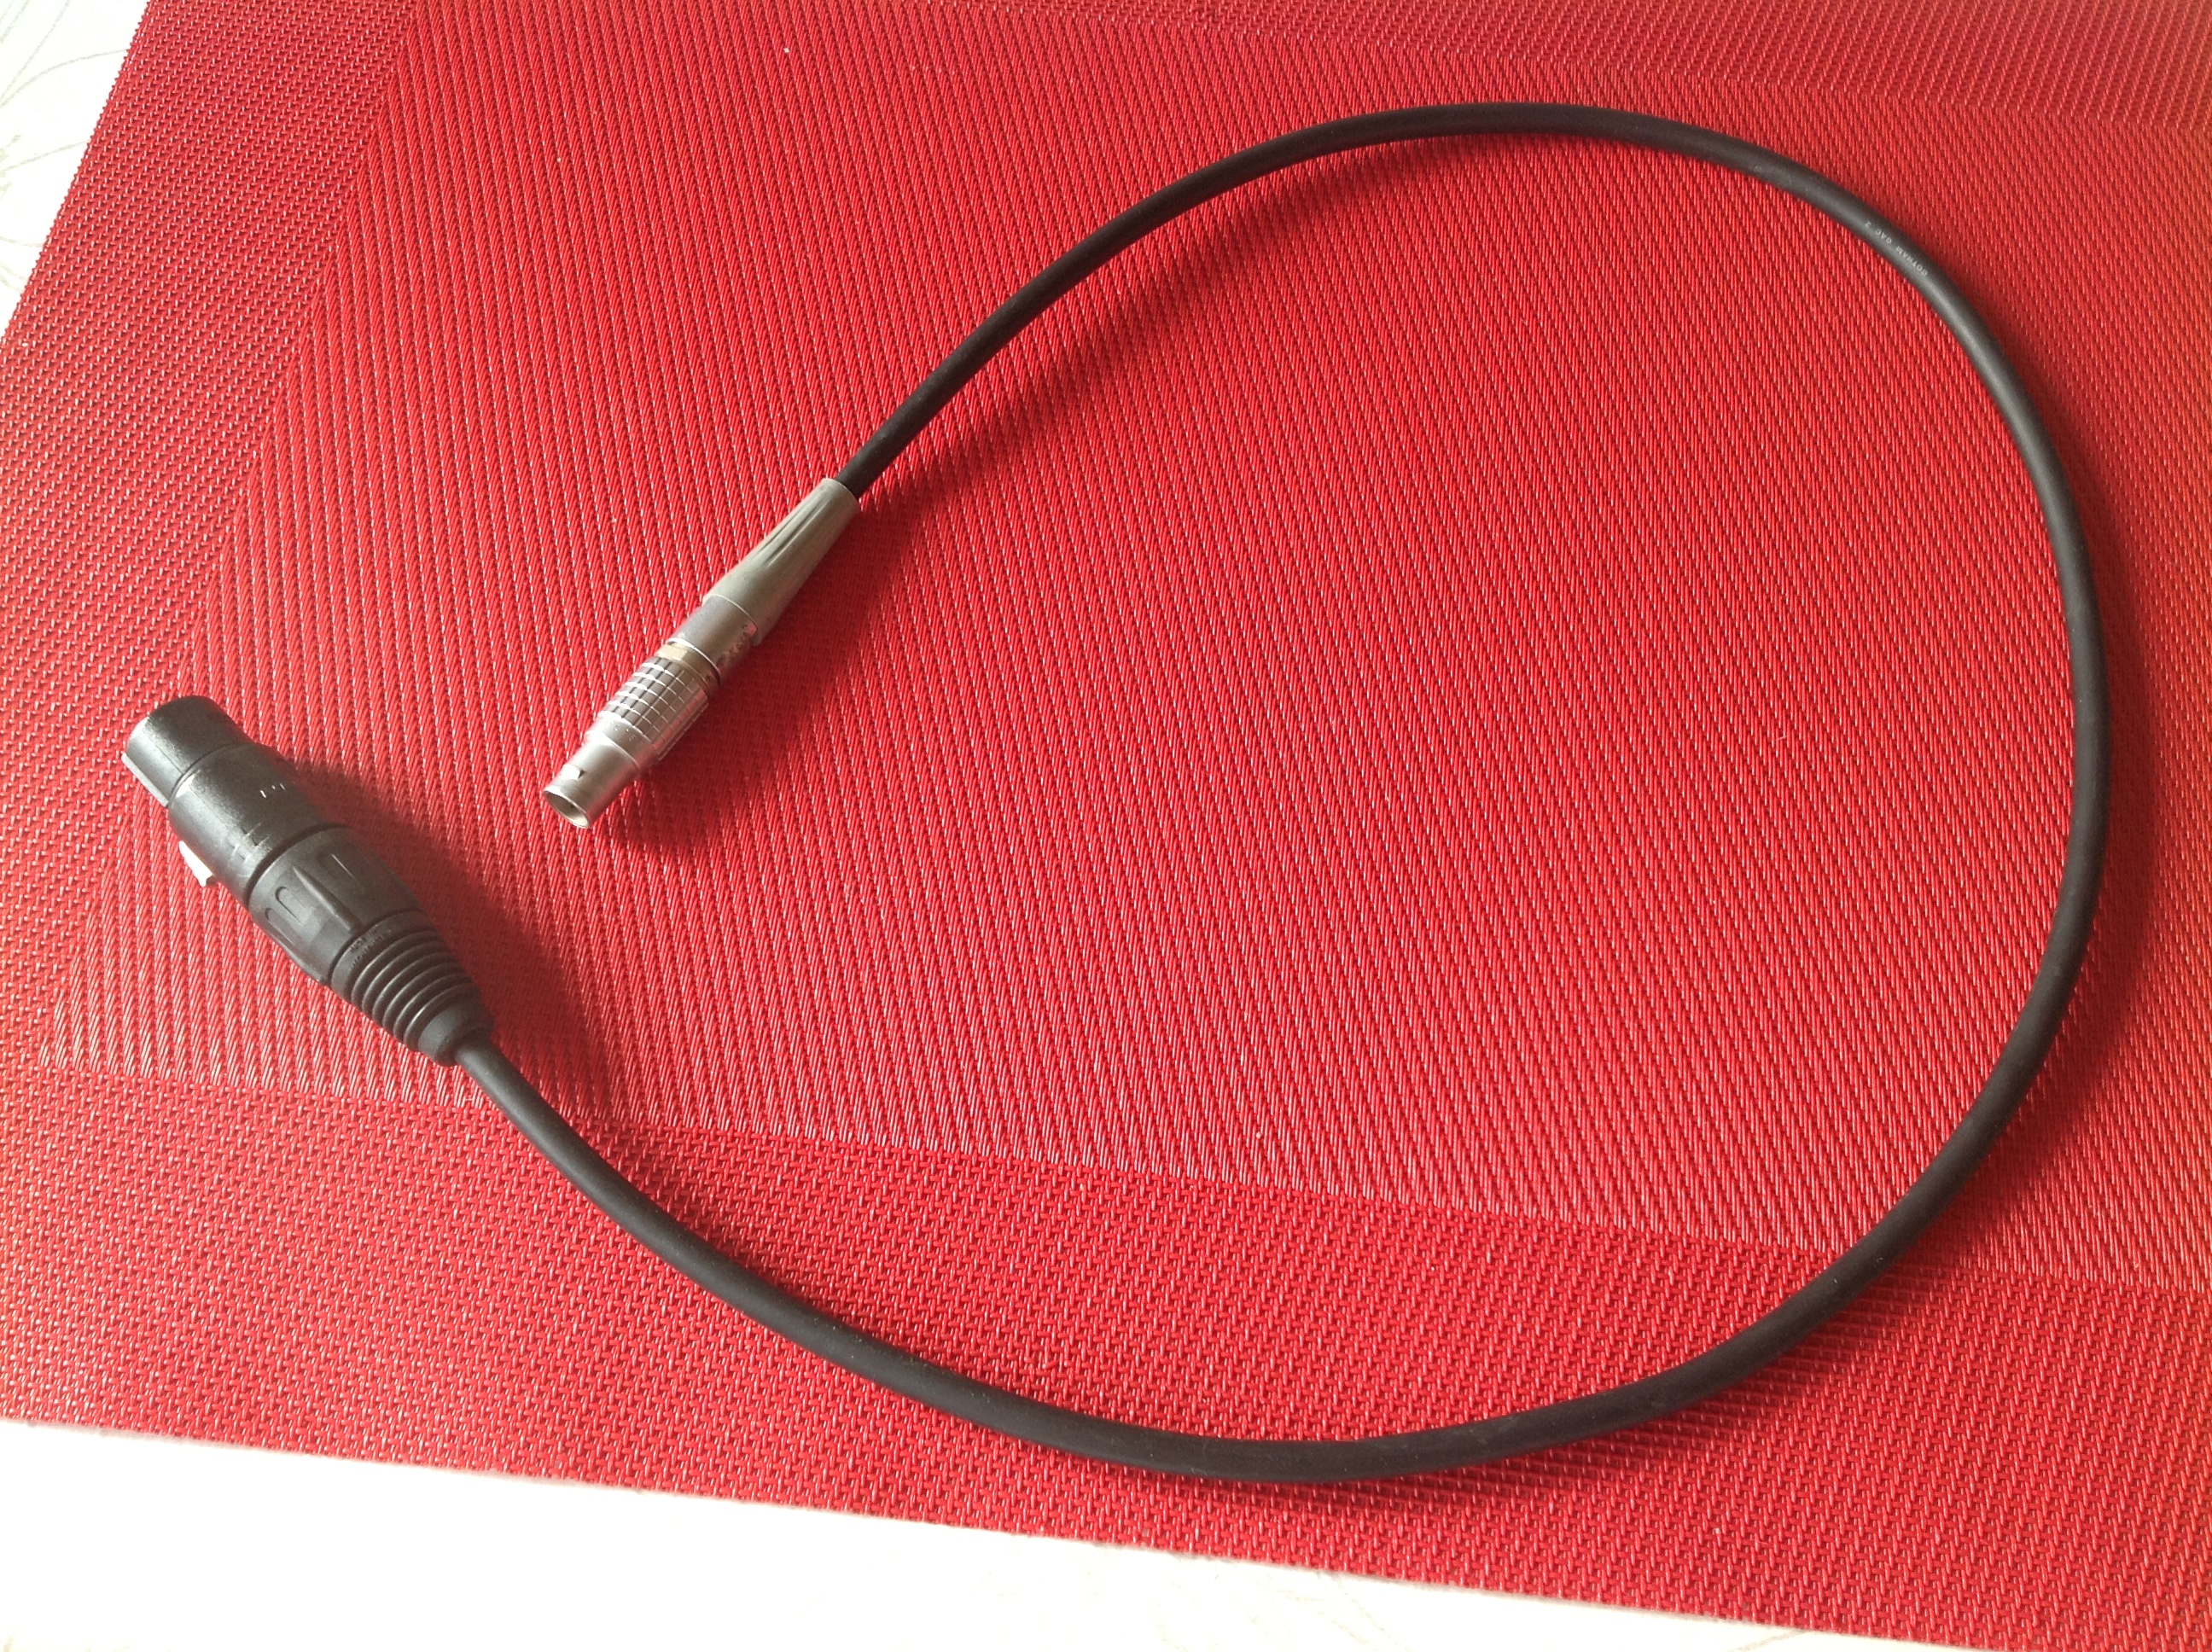 Kabel mit Lemo-Stecker 3 pol. + Neutrik-Buchse 3 pol.